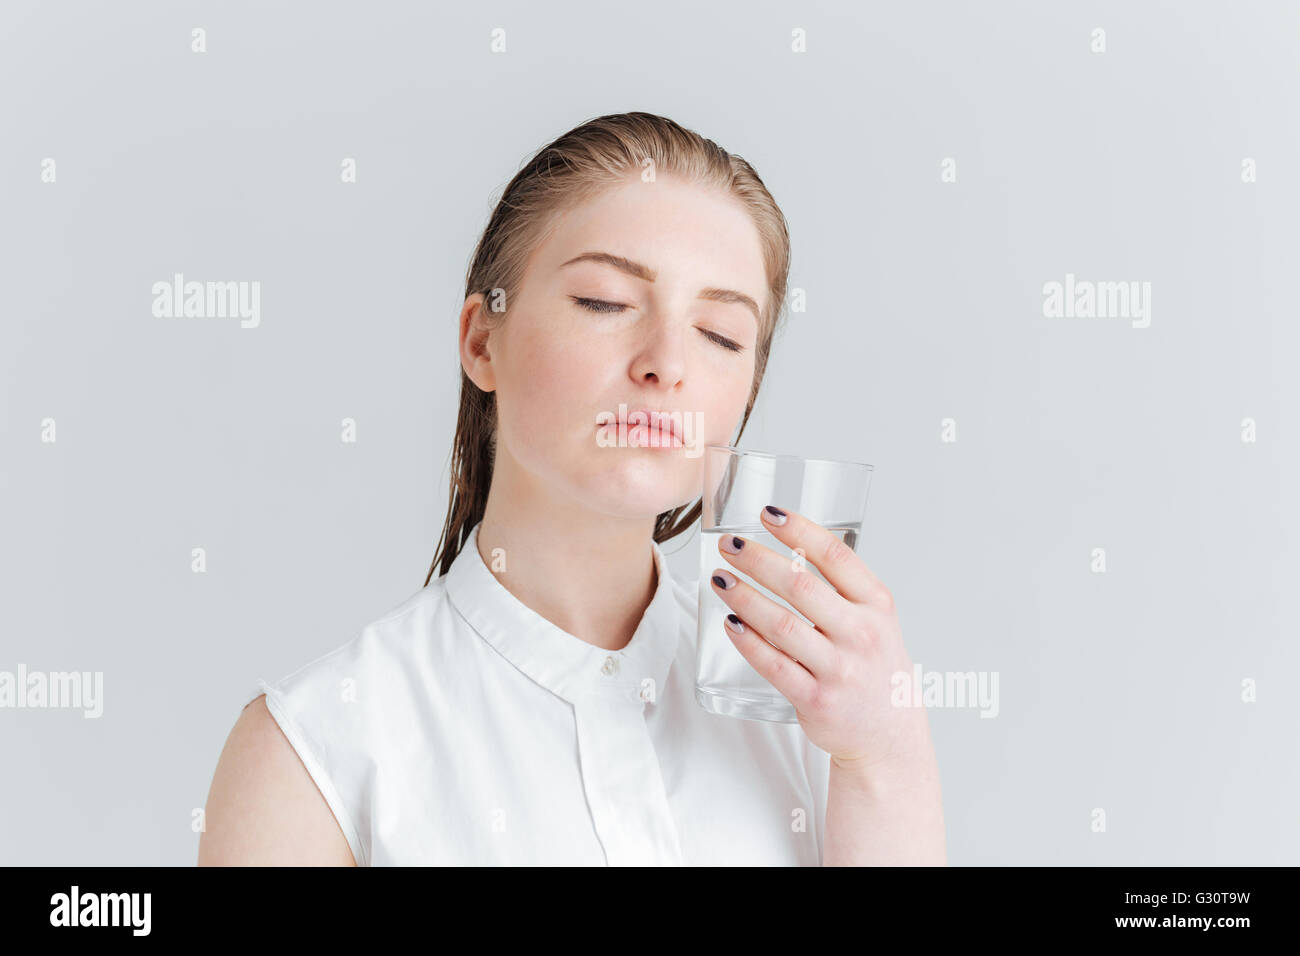 Portrait de beauté d'une jeune femme aux yeux clos holding glass of water isolé sur fond blanc Banque D'Images